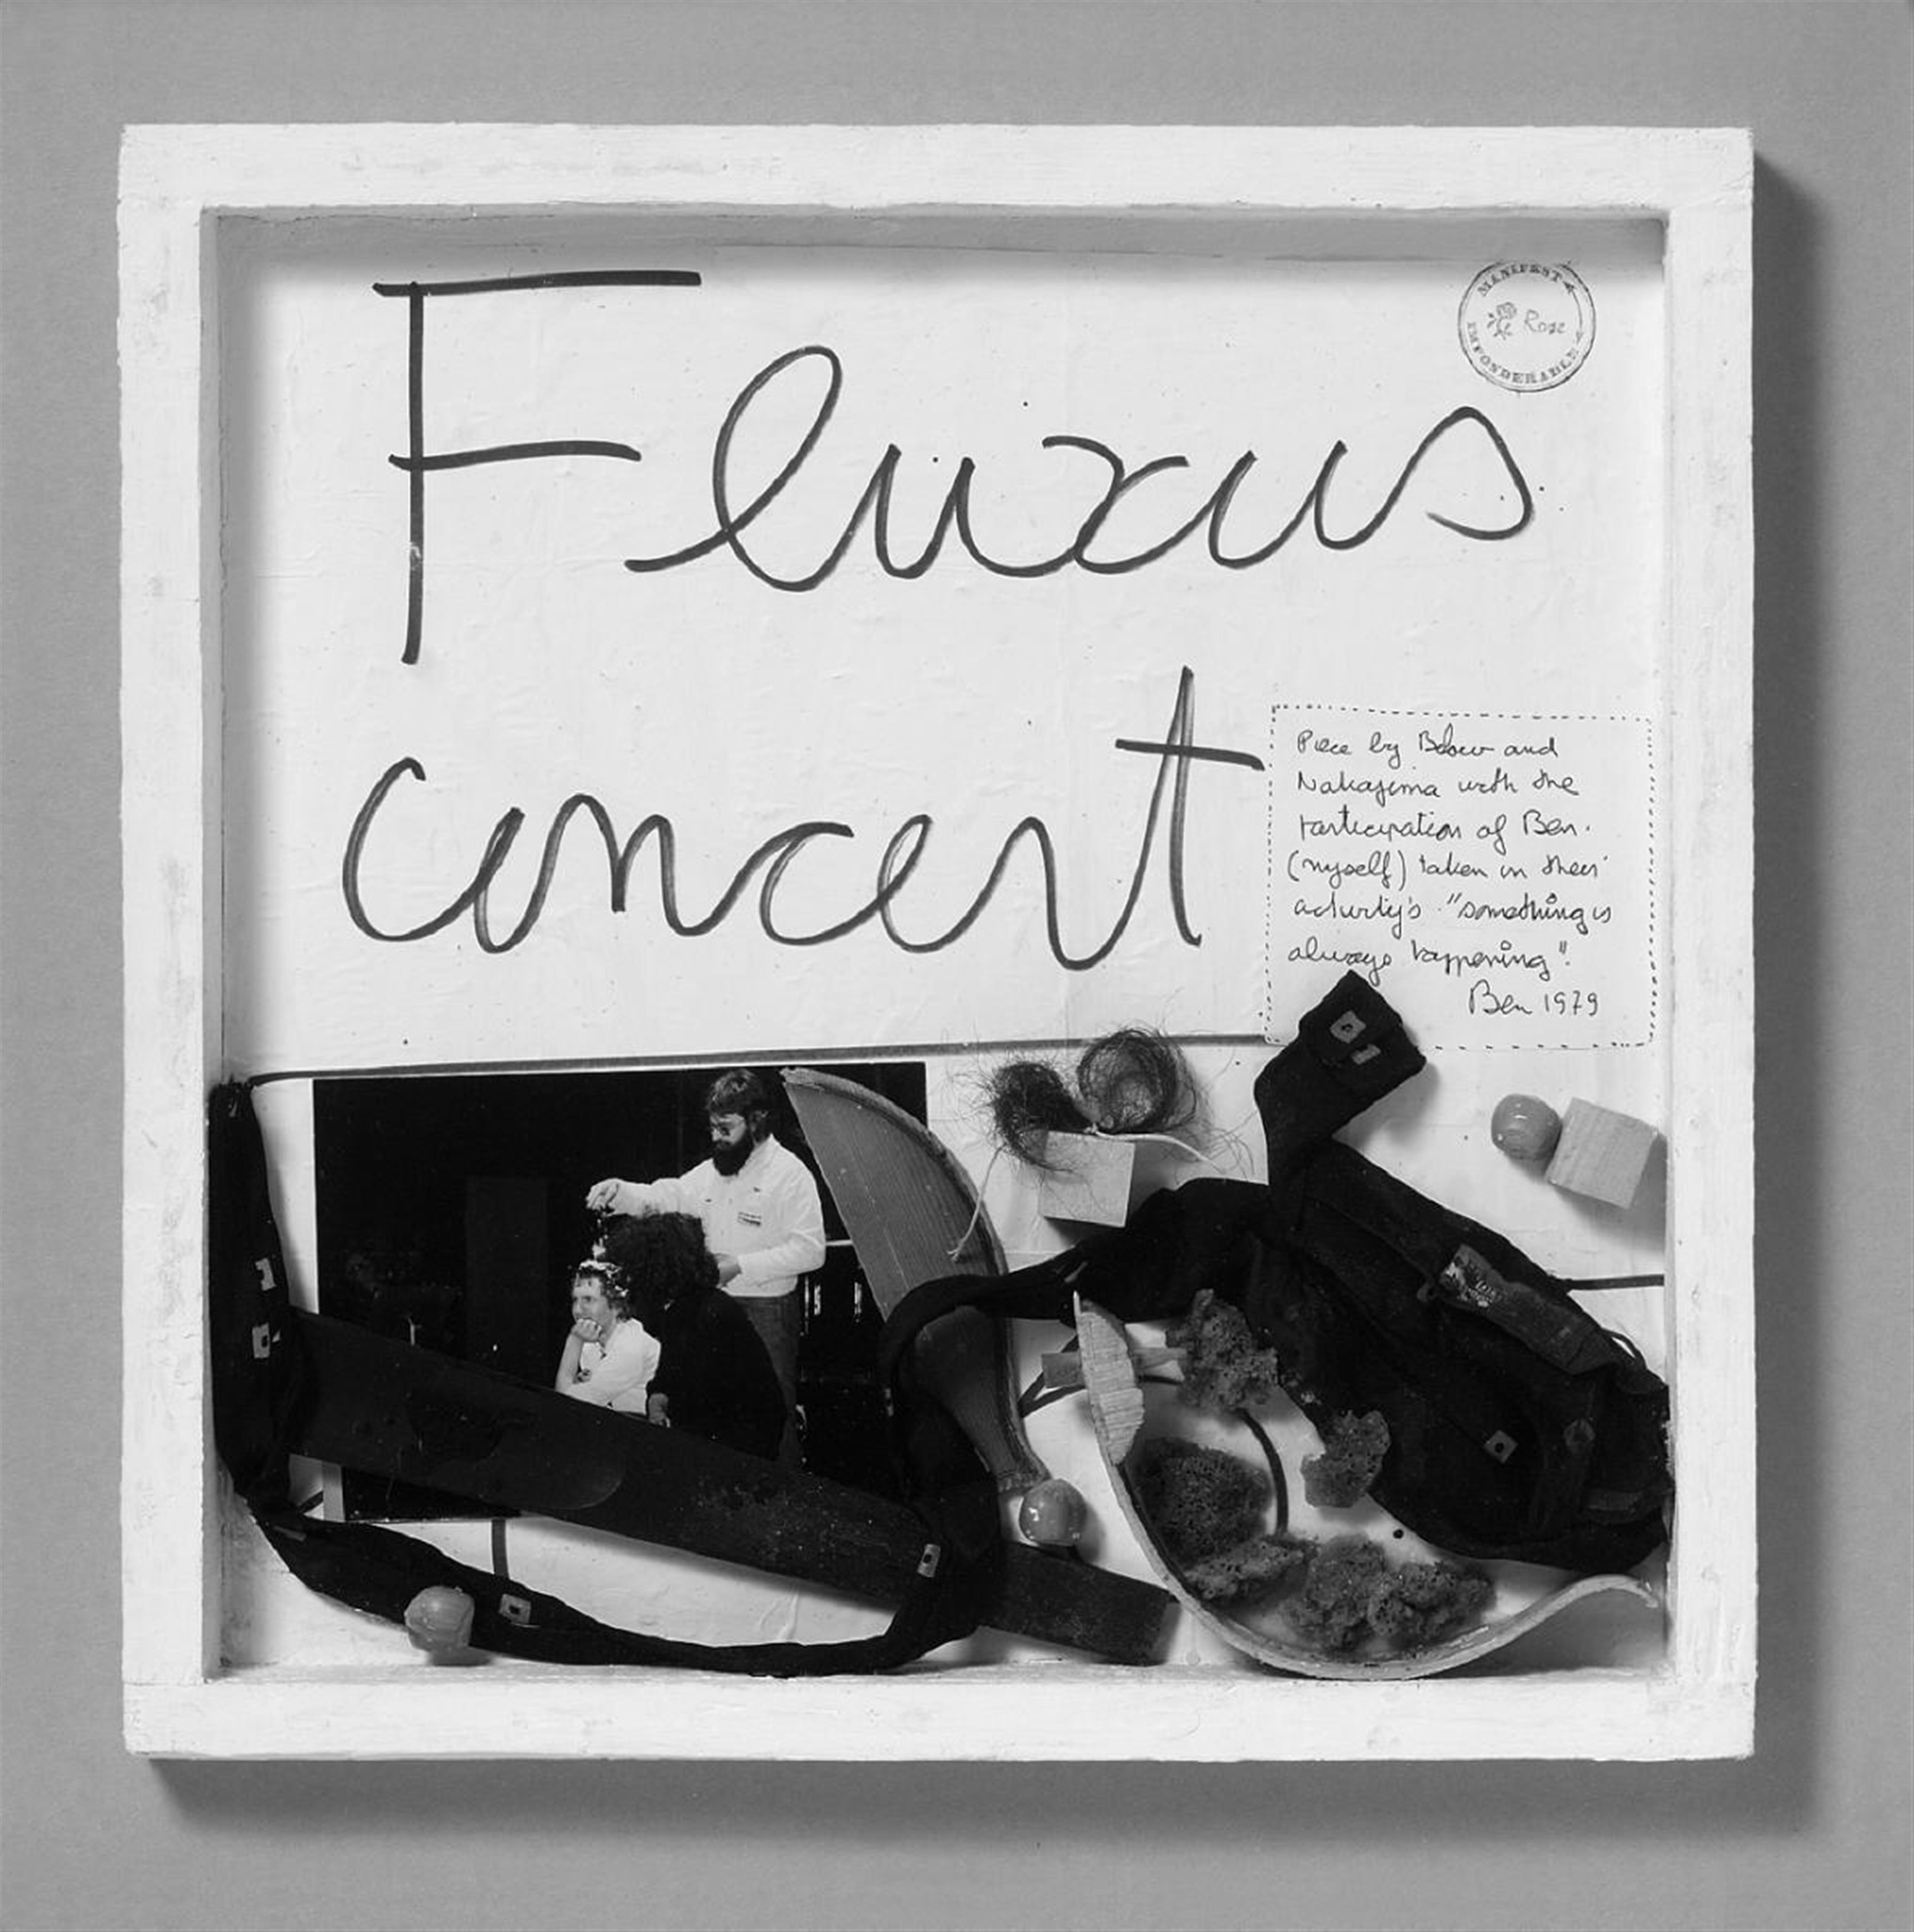 Ben Vautier - Fluxus Concert - image-1